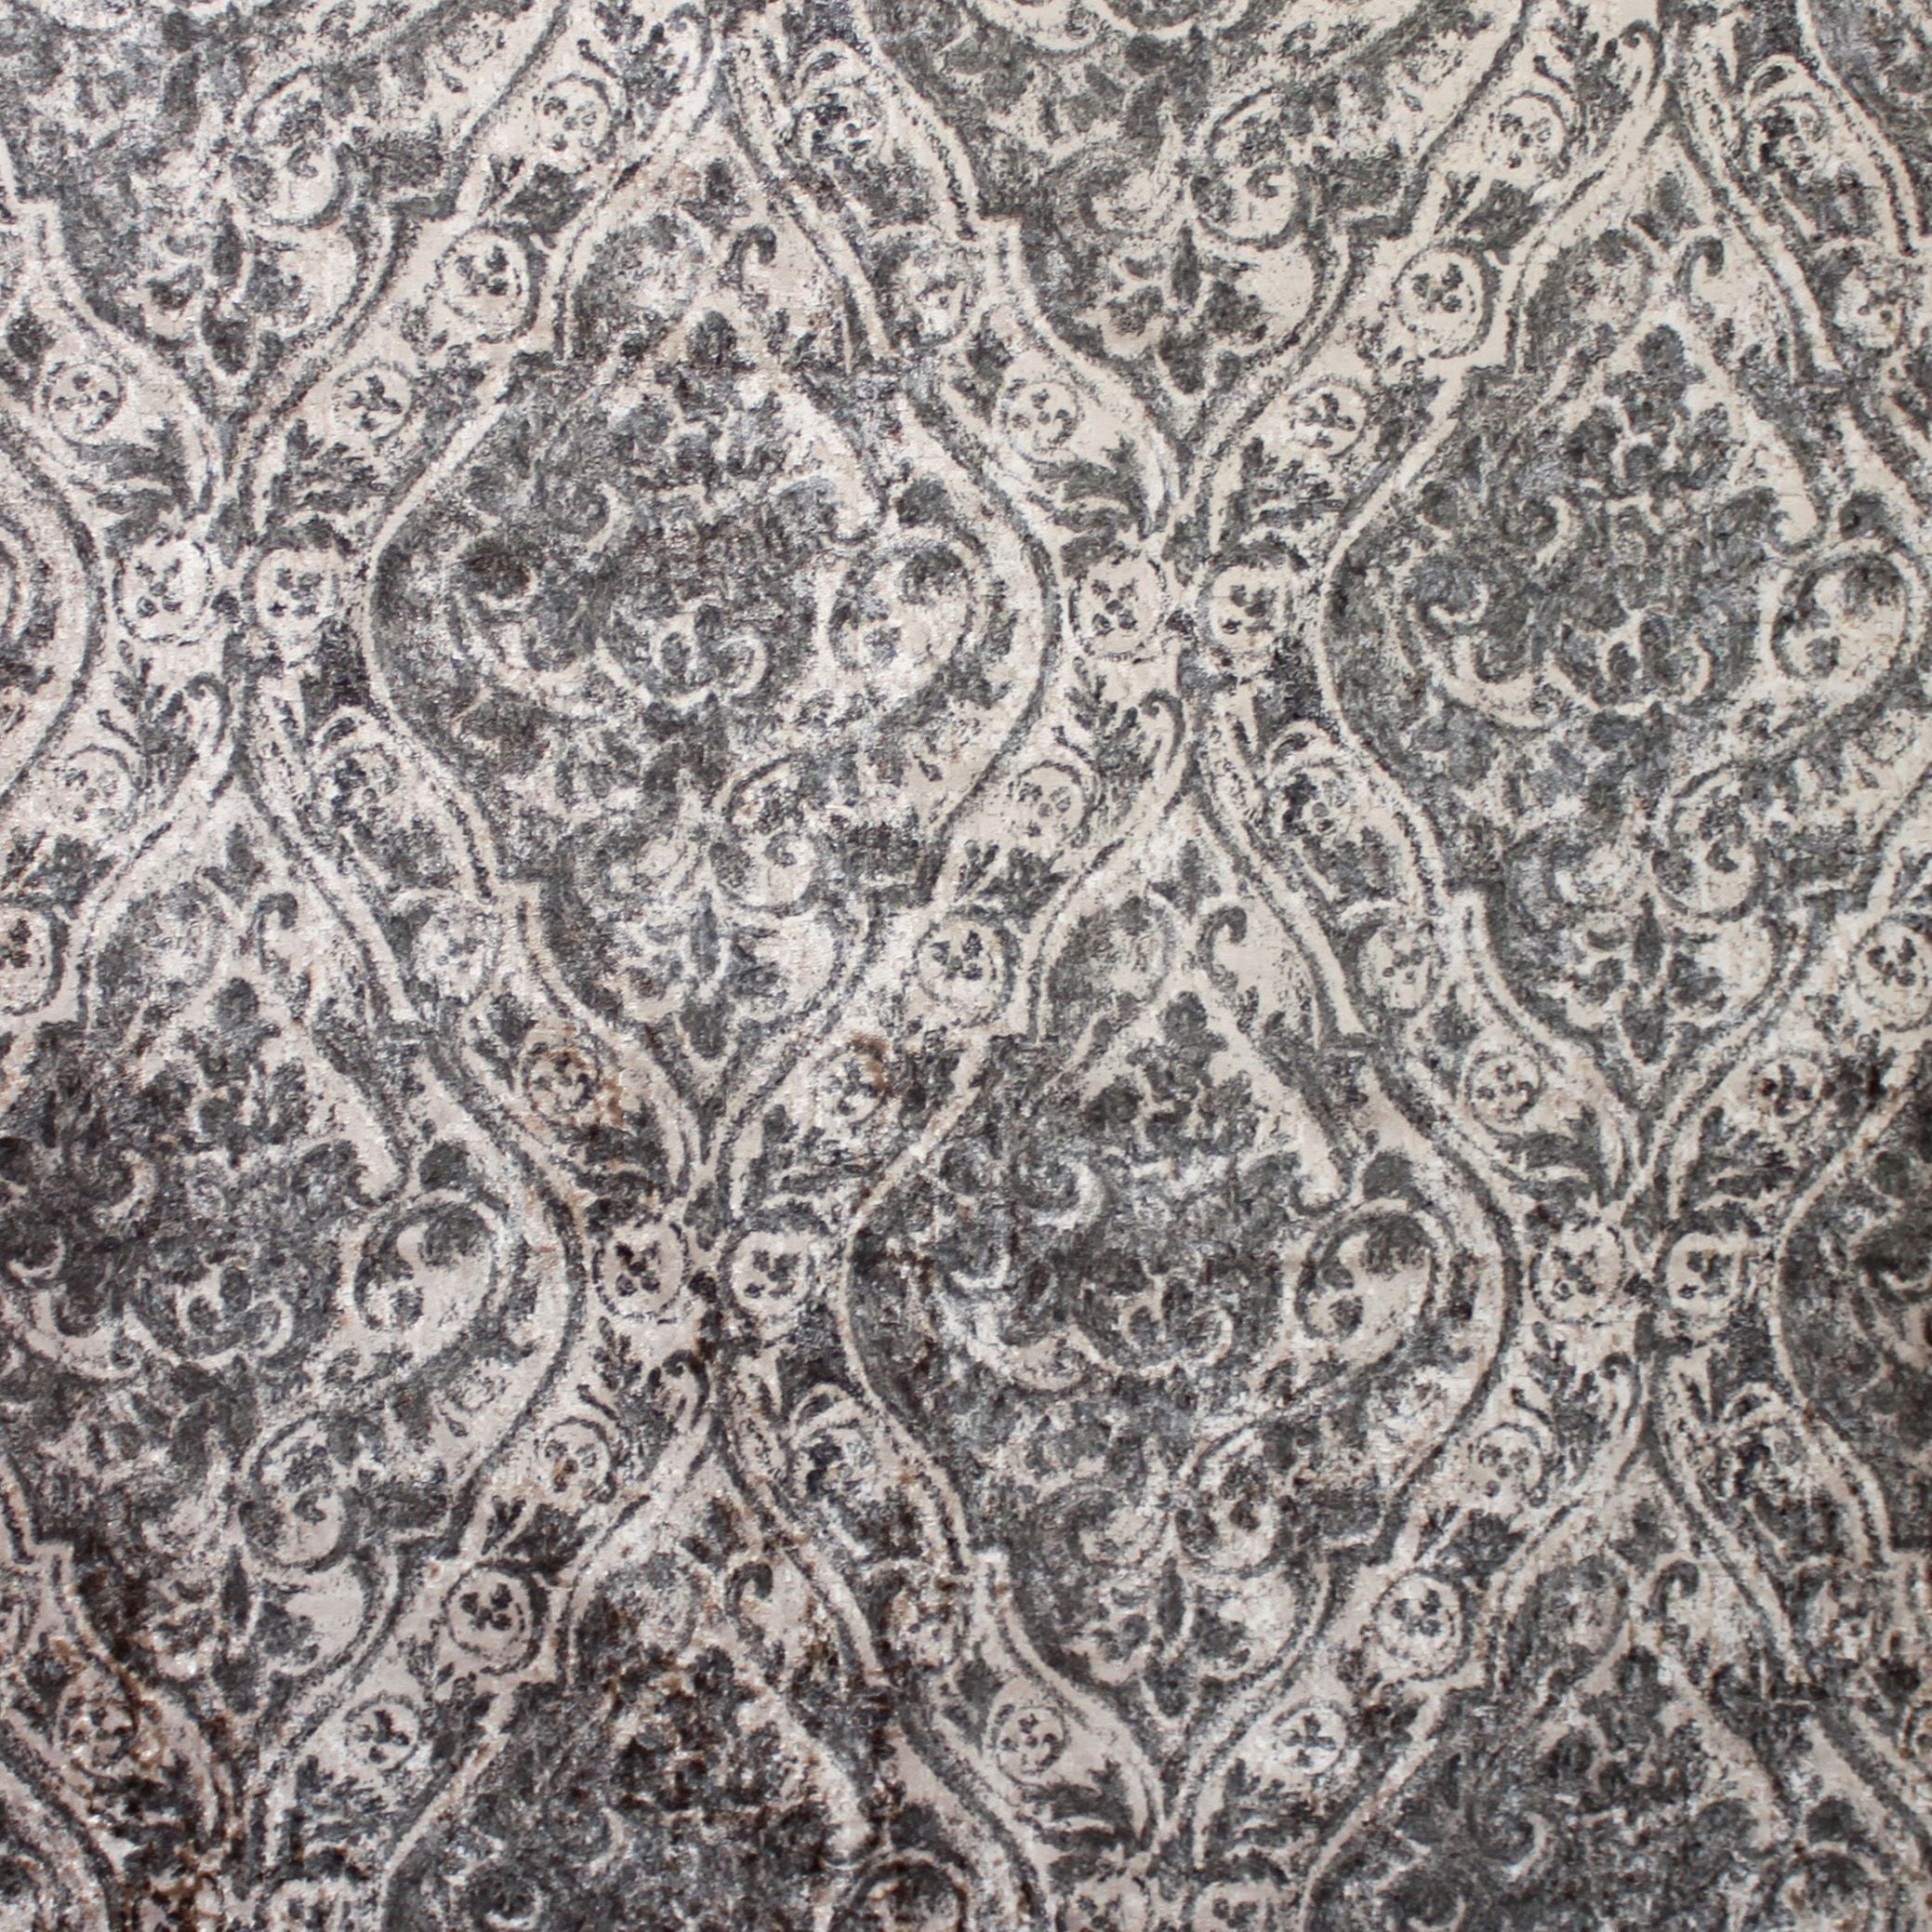 McAlister Textiles Renaissance Charcoal Grey Printed Velvet Curtains Tailored Curtains 116cm(w) x 137cm(d) (46" x 54") 